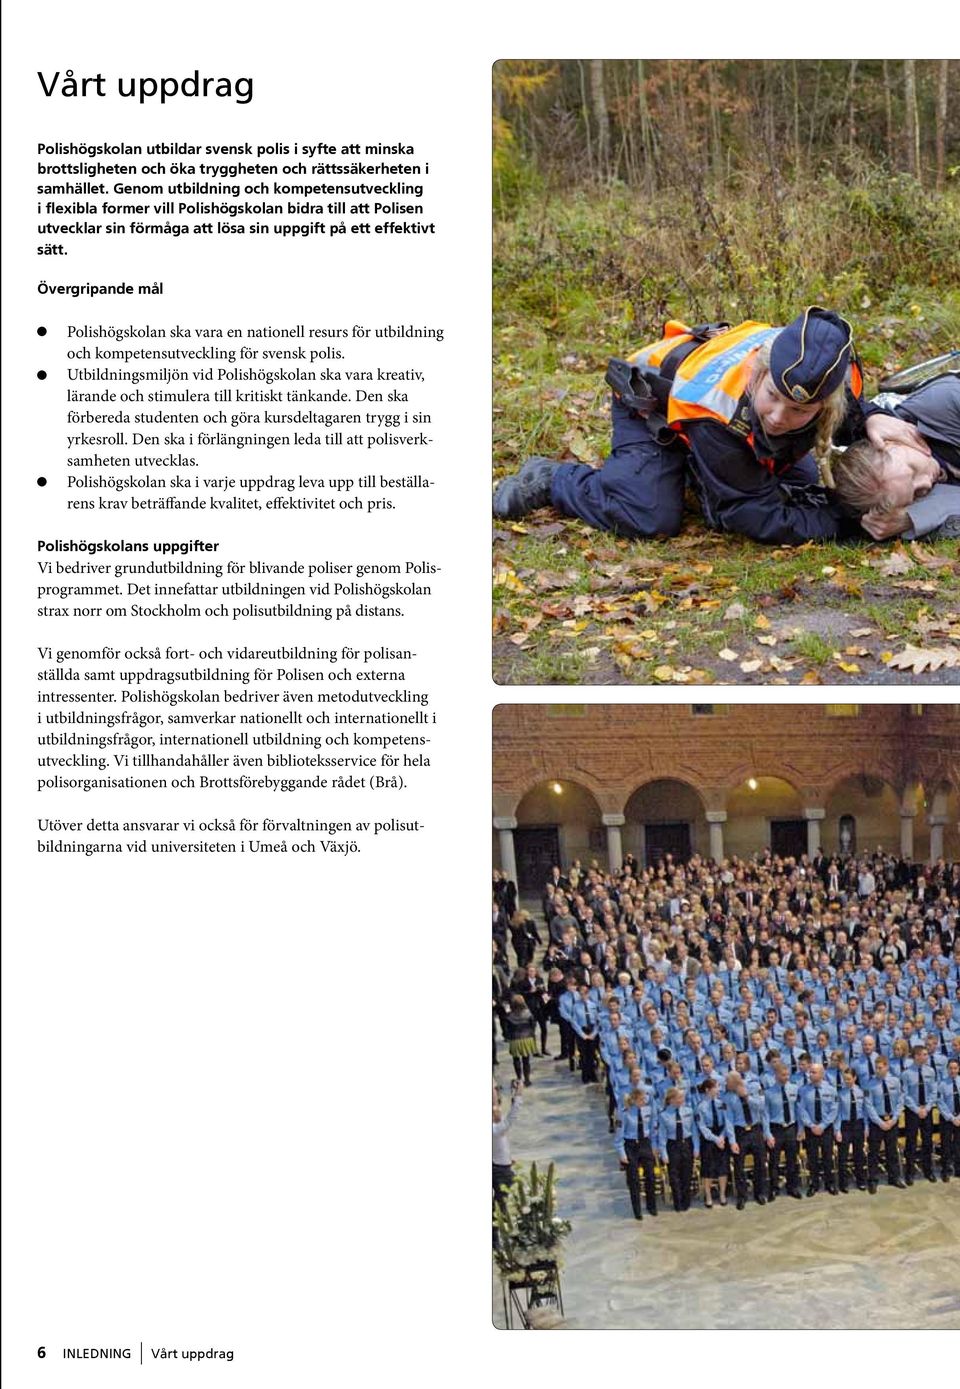 Övergripande mål Polishögskolan ska vara en nationell resurs för utbildning och kompetensutveckling för svensk polis.